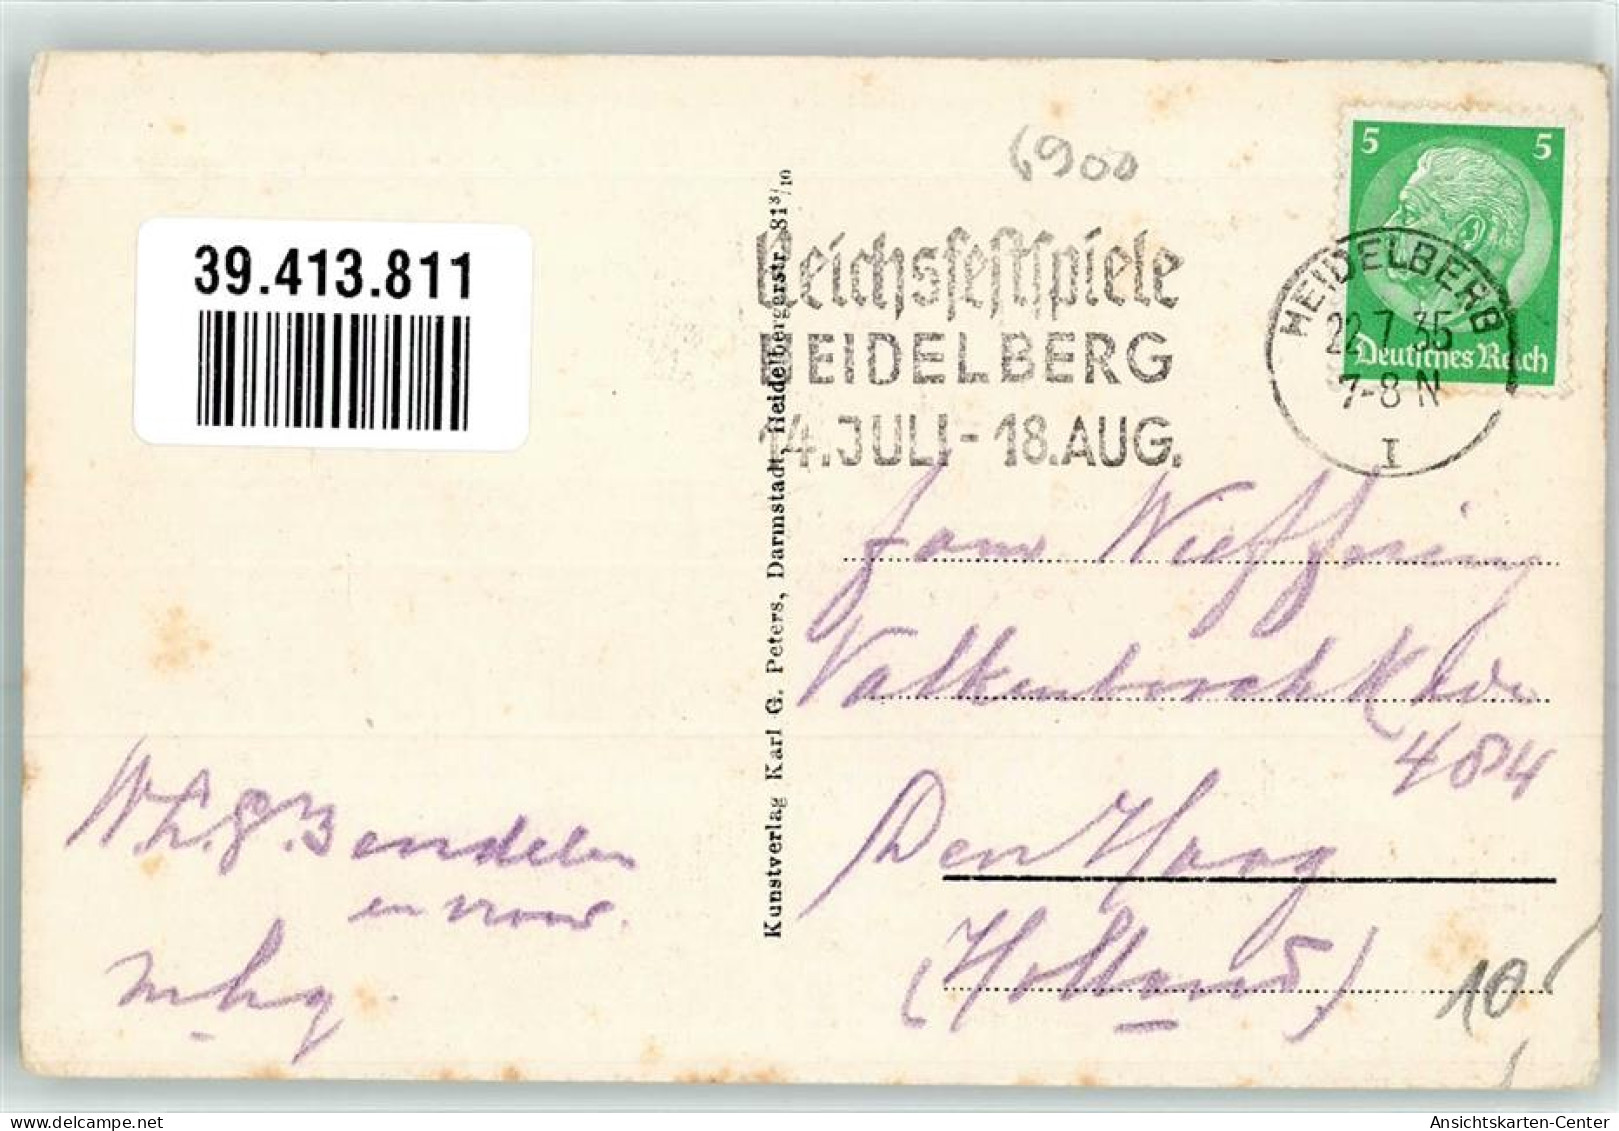 39413811 - Heidelberg , Neckar - Heidelberg